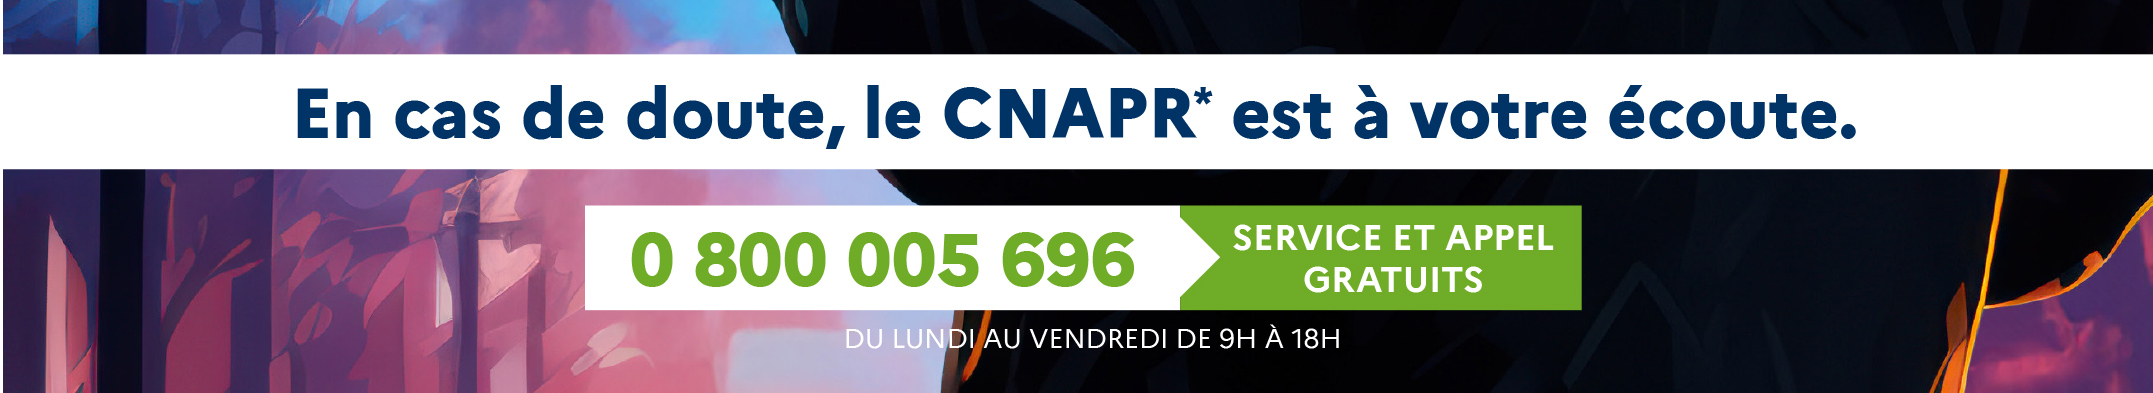 Numéro vert du CNAPR 0 800 005 696